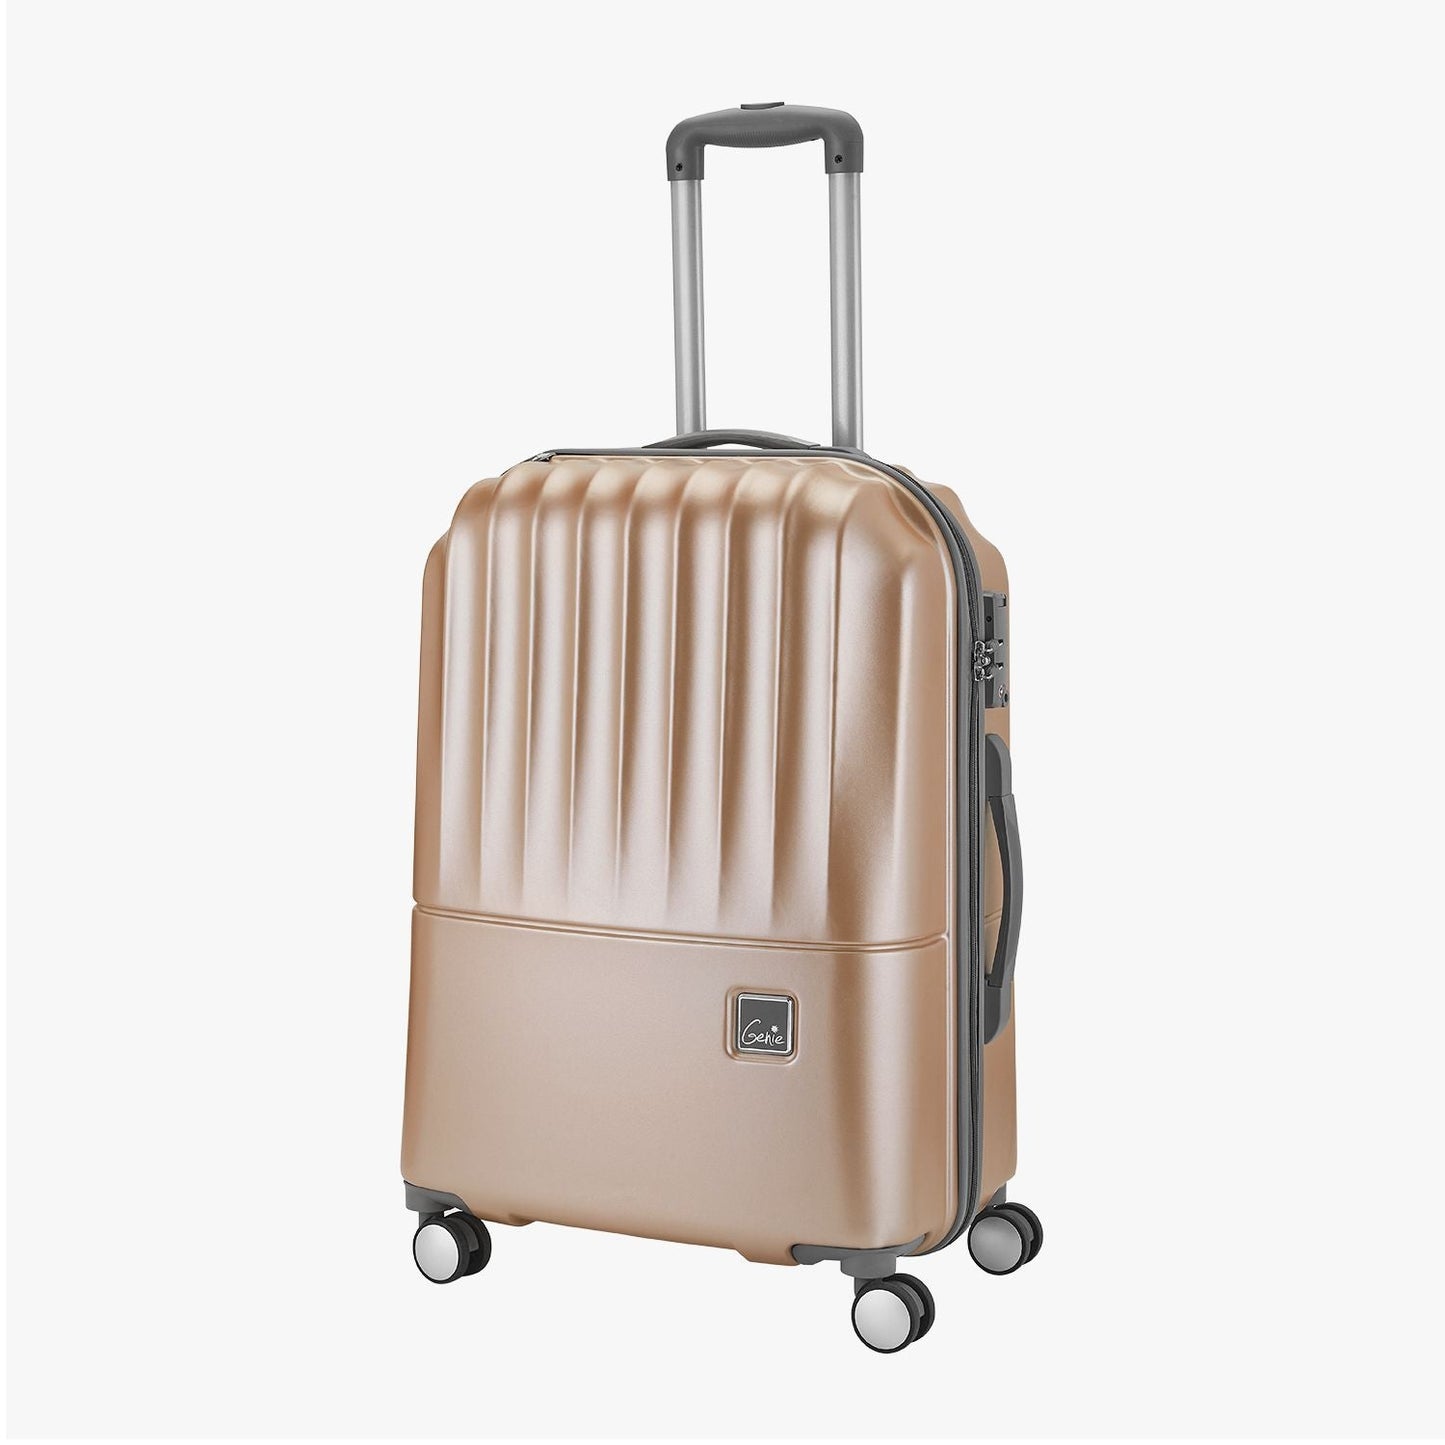 Genie Glam Hard Luggage Suitcase